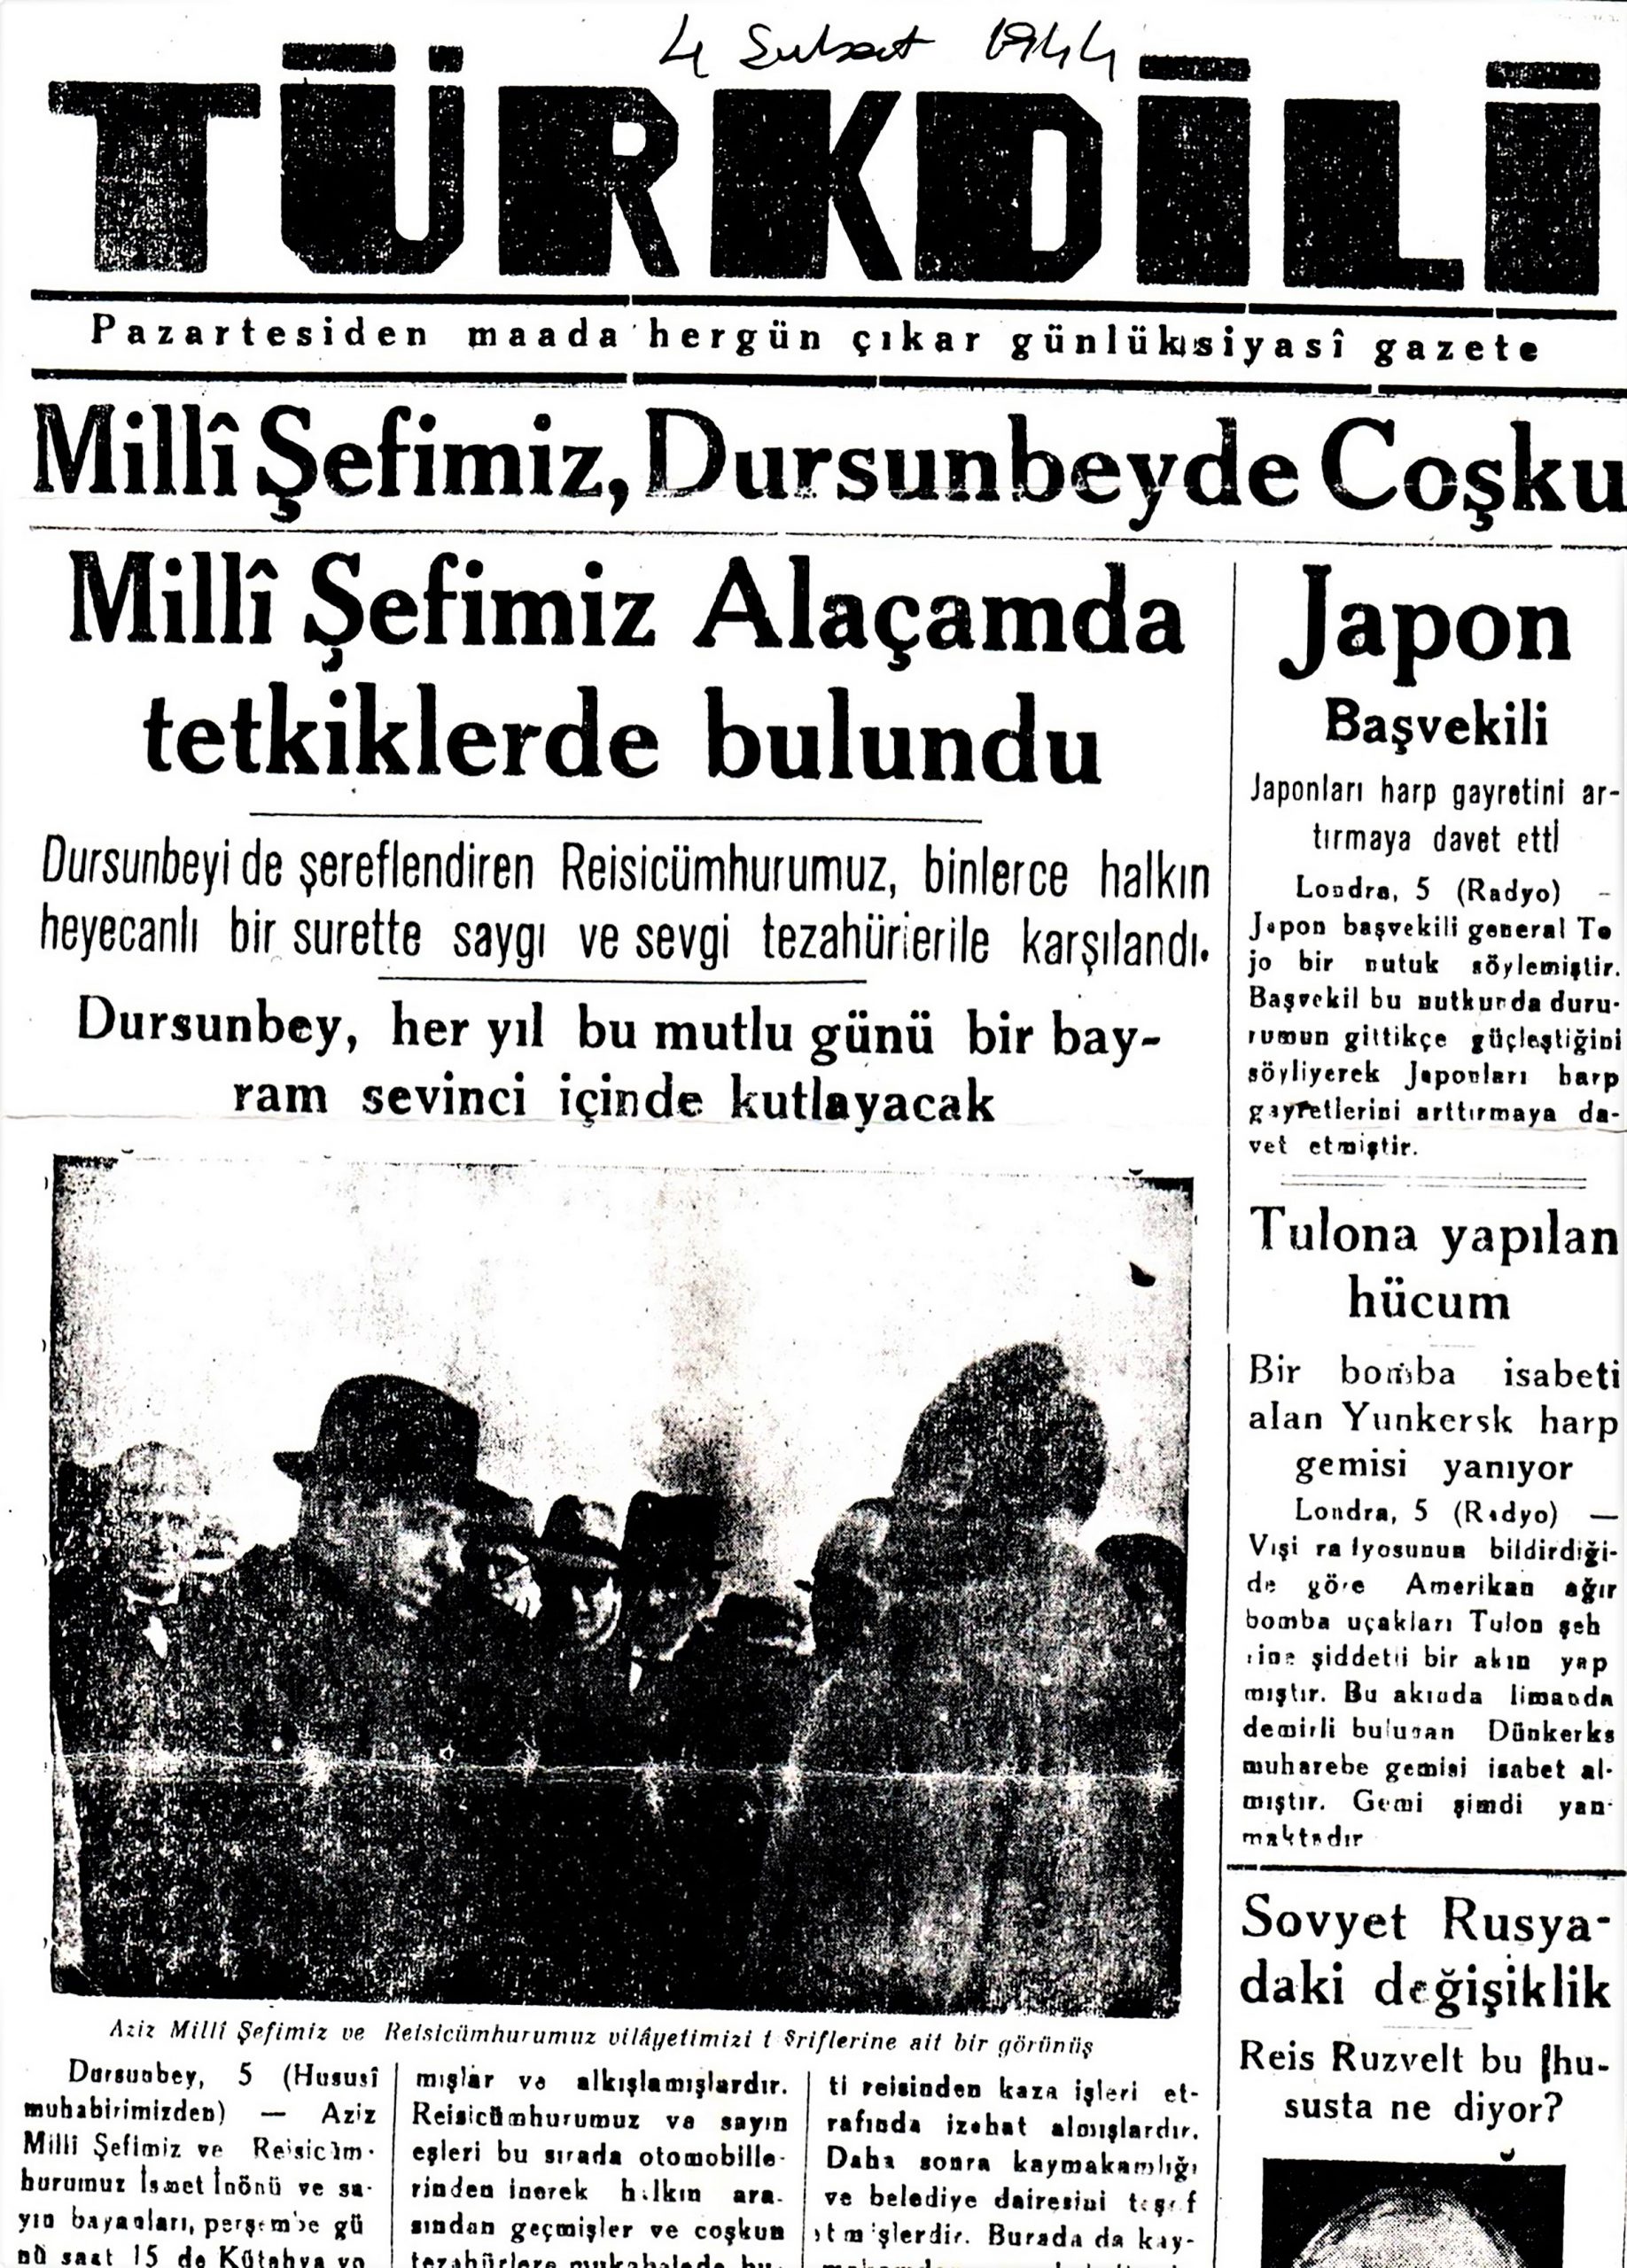 Dursunbey’in 2. Dünya Savaşındaki Tarihi Önemi 4 şubat 1944’de